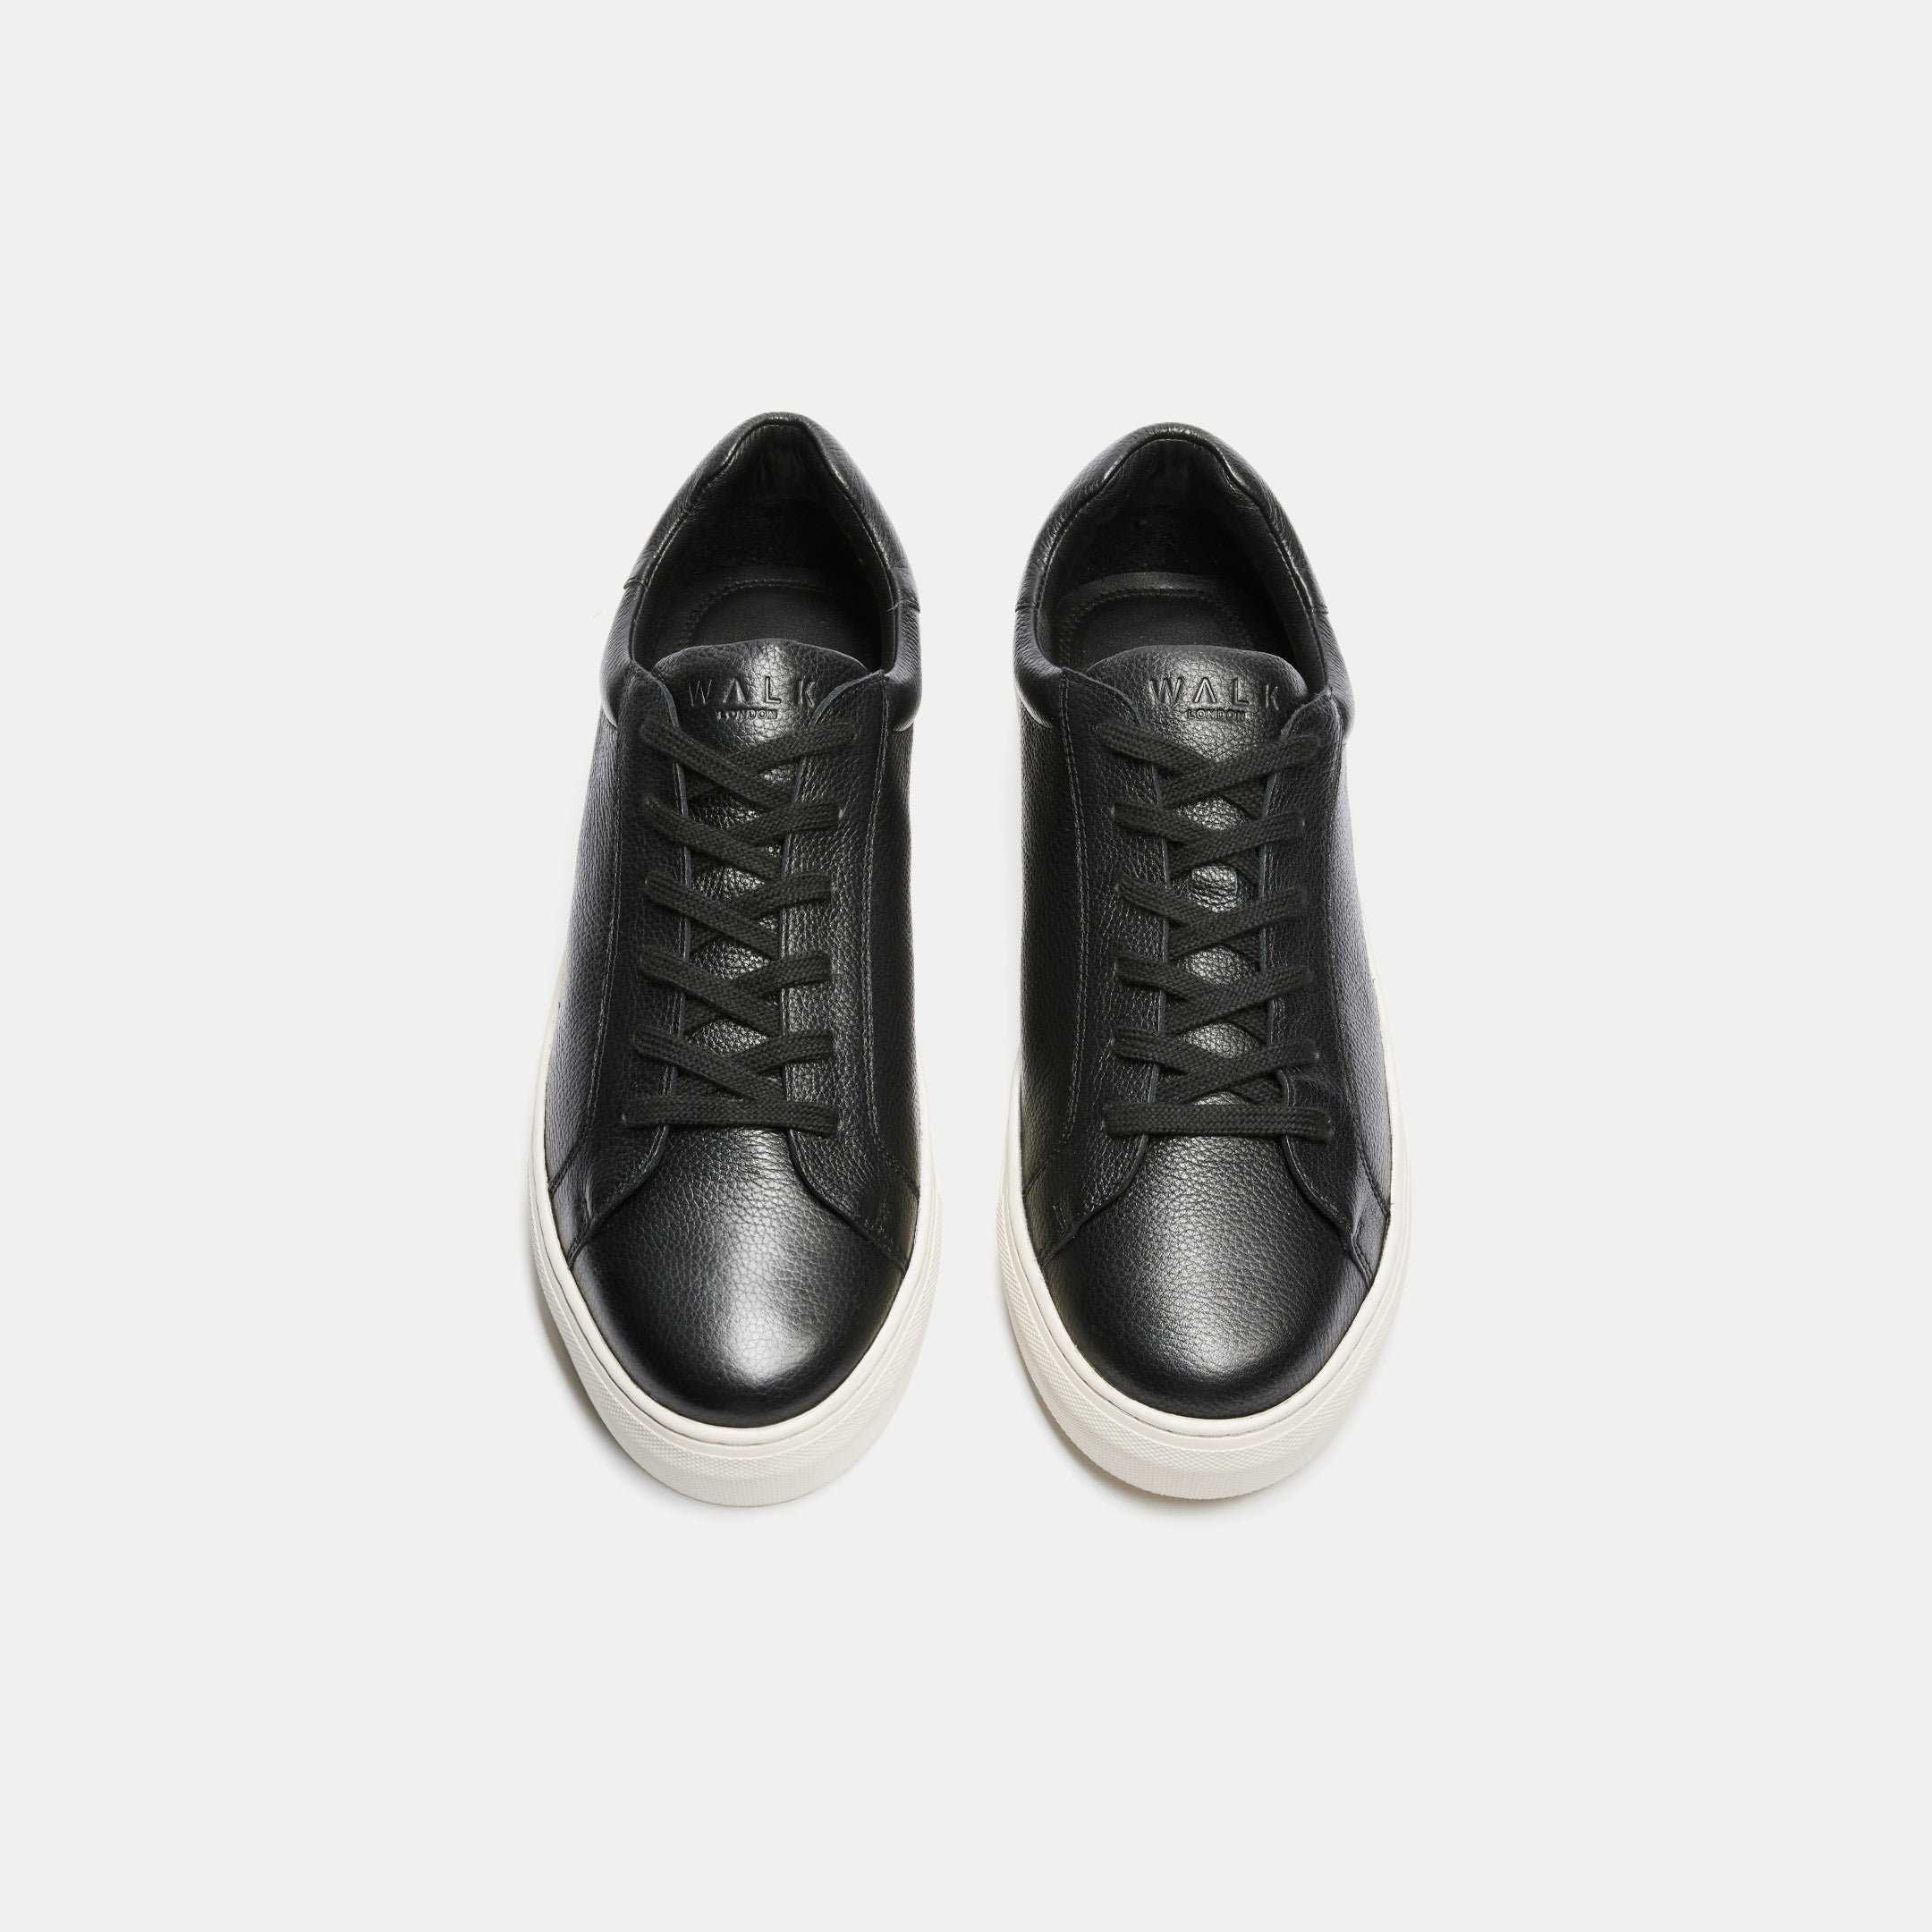 Walk London Mens Harrison Sneaker in Black Leather